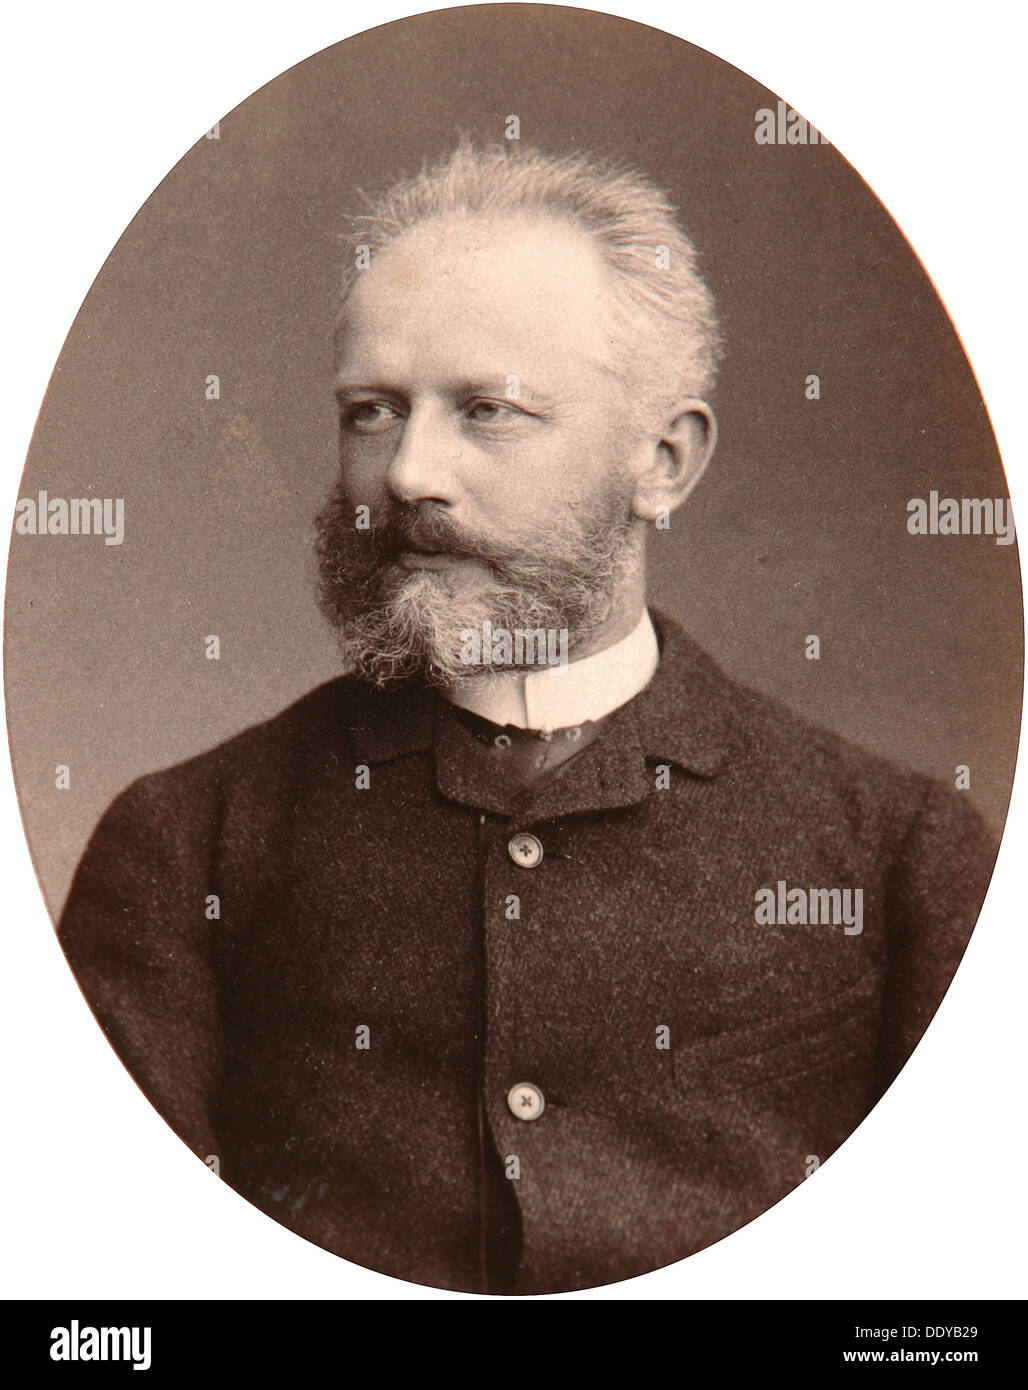 Peter Tchaikovsky, russischer Komponist, Ende des 19. Jahrhunderts. Künstler: Sergei Levitsky Stockfoto